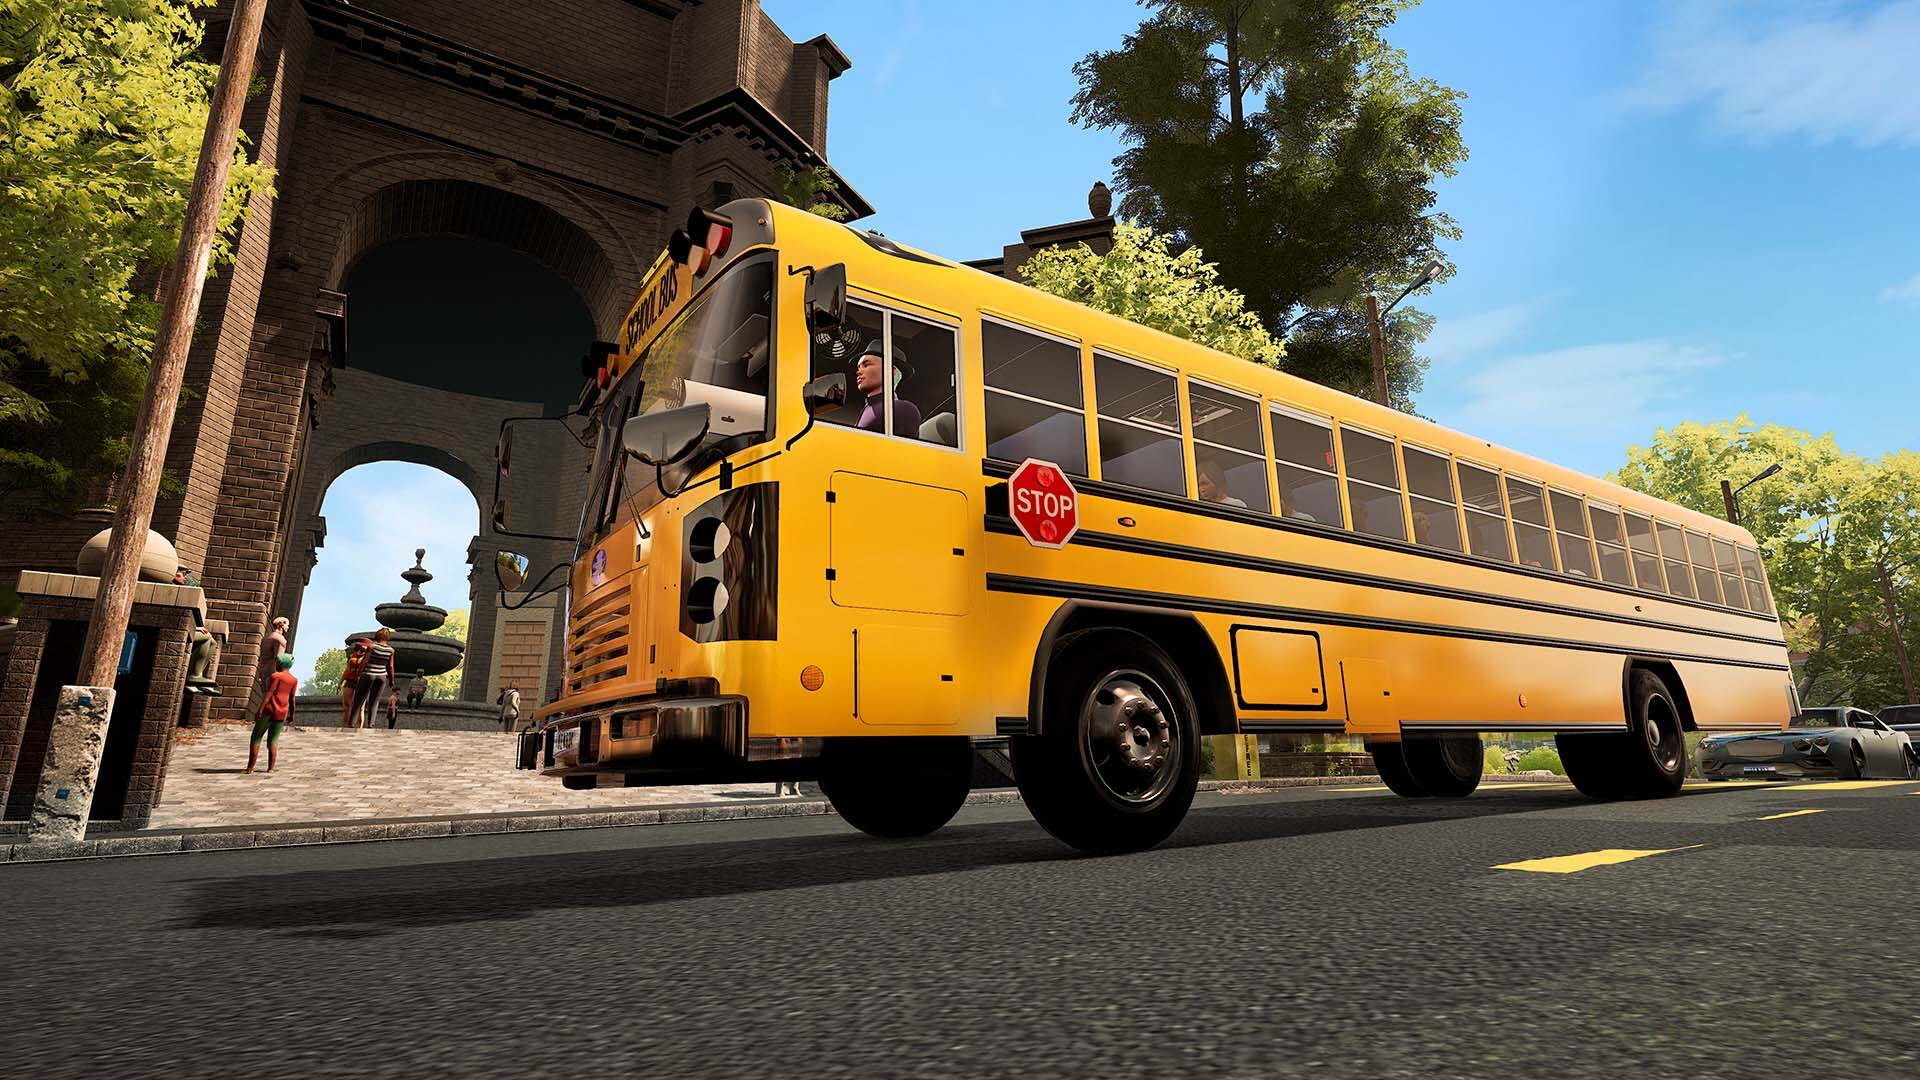 Bus Simulator 21 Next Stop - Season Pass DLC Steam CD Key 18.61 USD